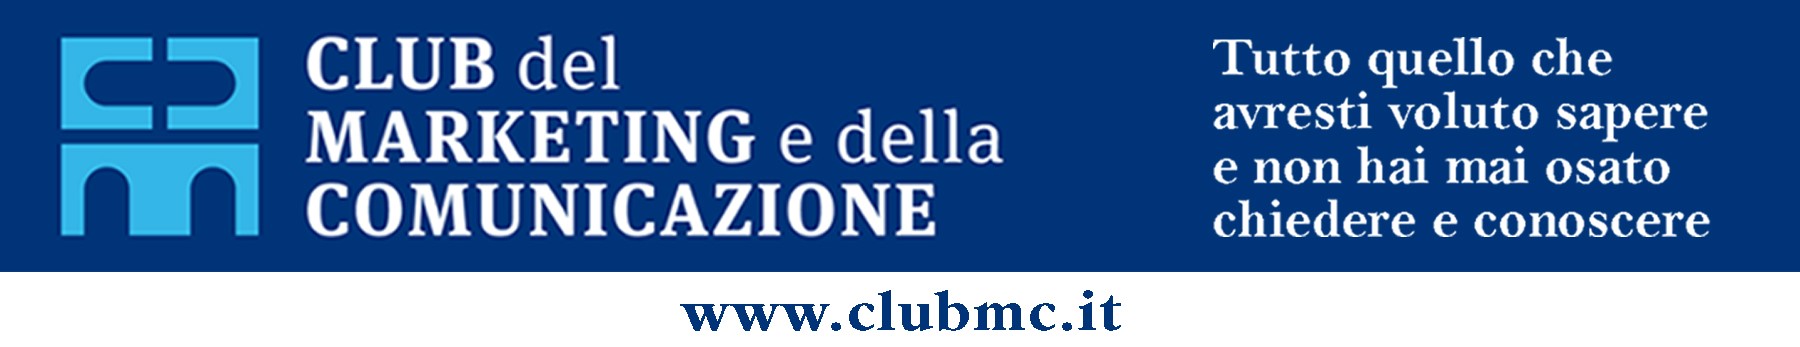 club mc banner 1 itin